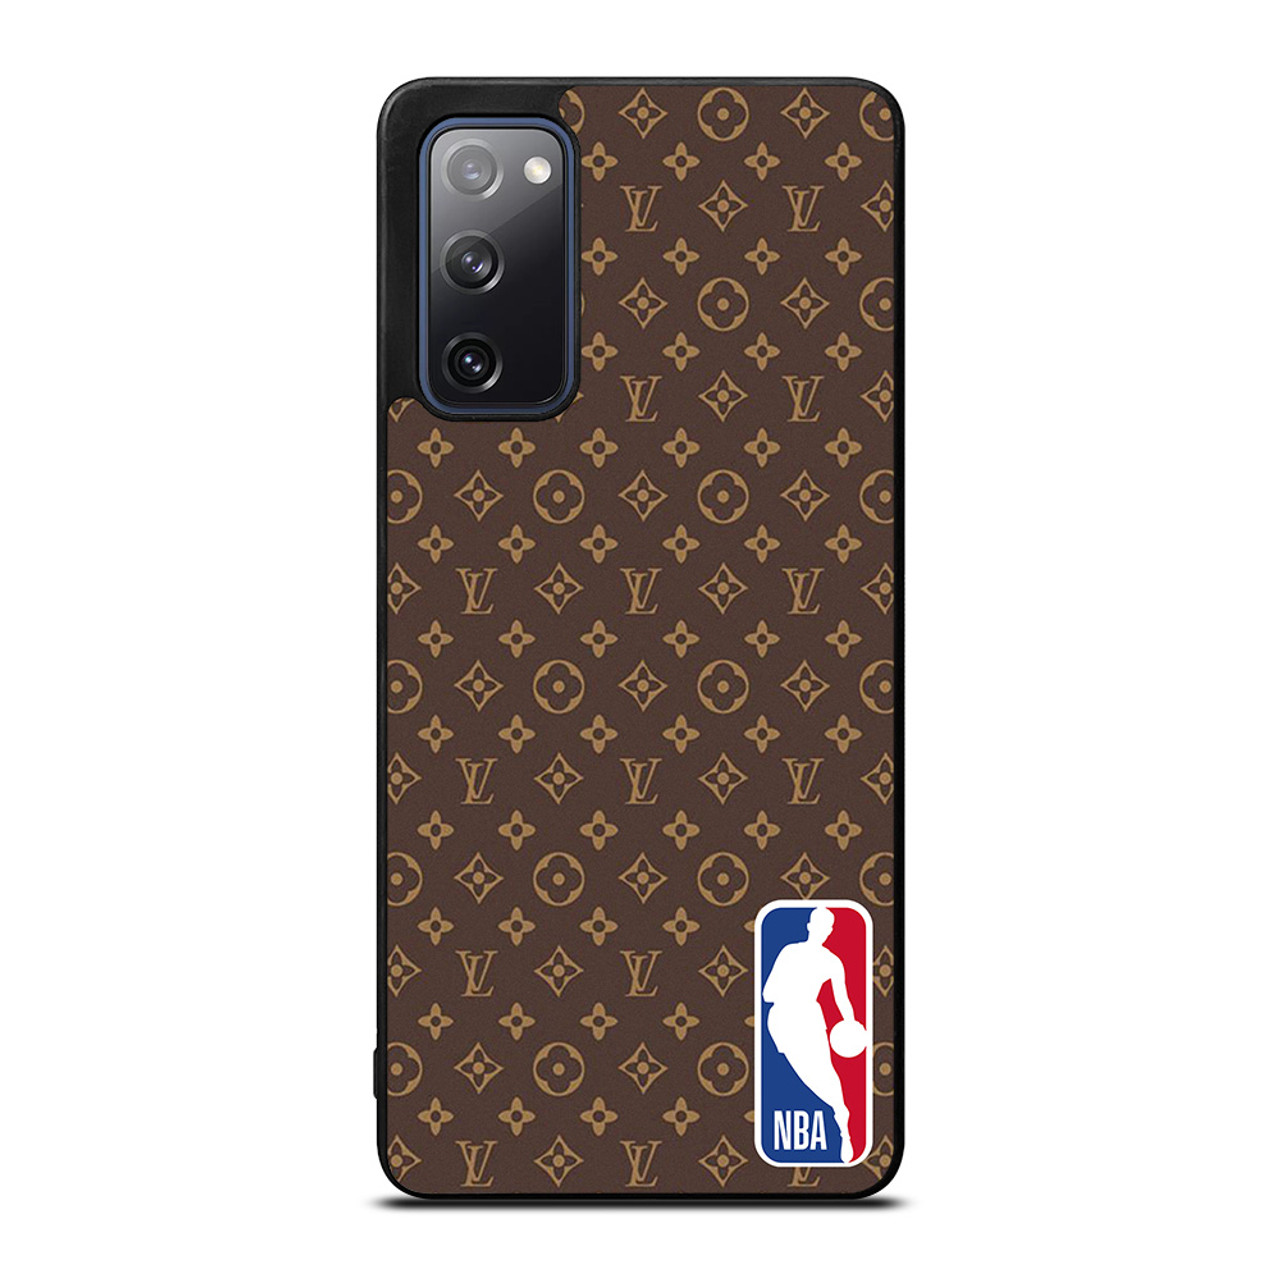 NBA BASKETBALL X LOUIS VUITTON Samsung Galaxy S20 FE Case Cover